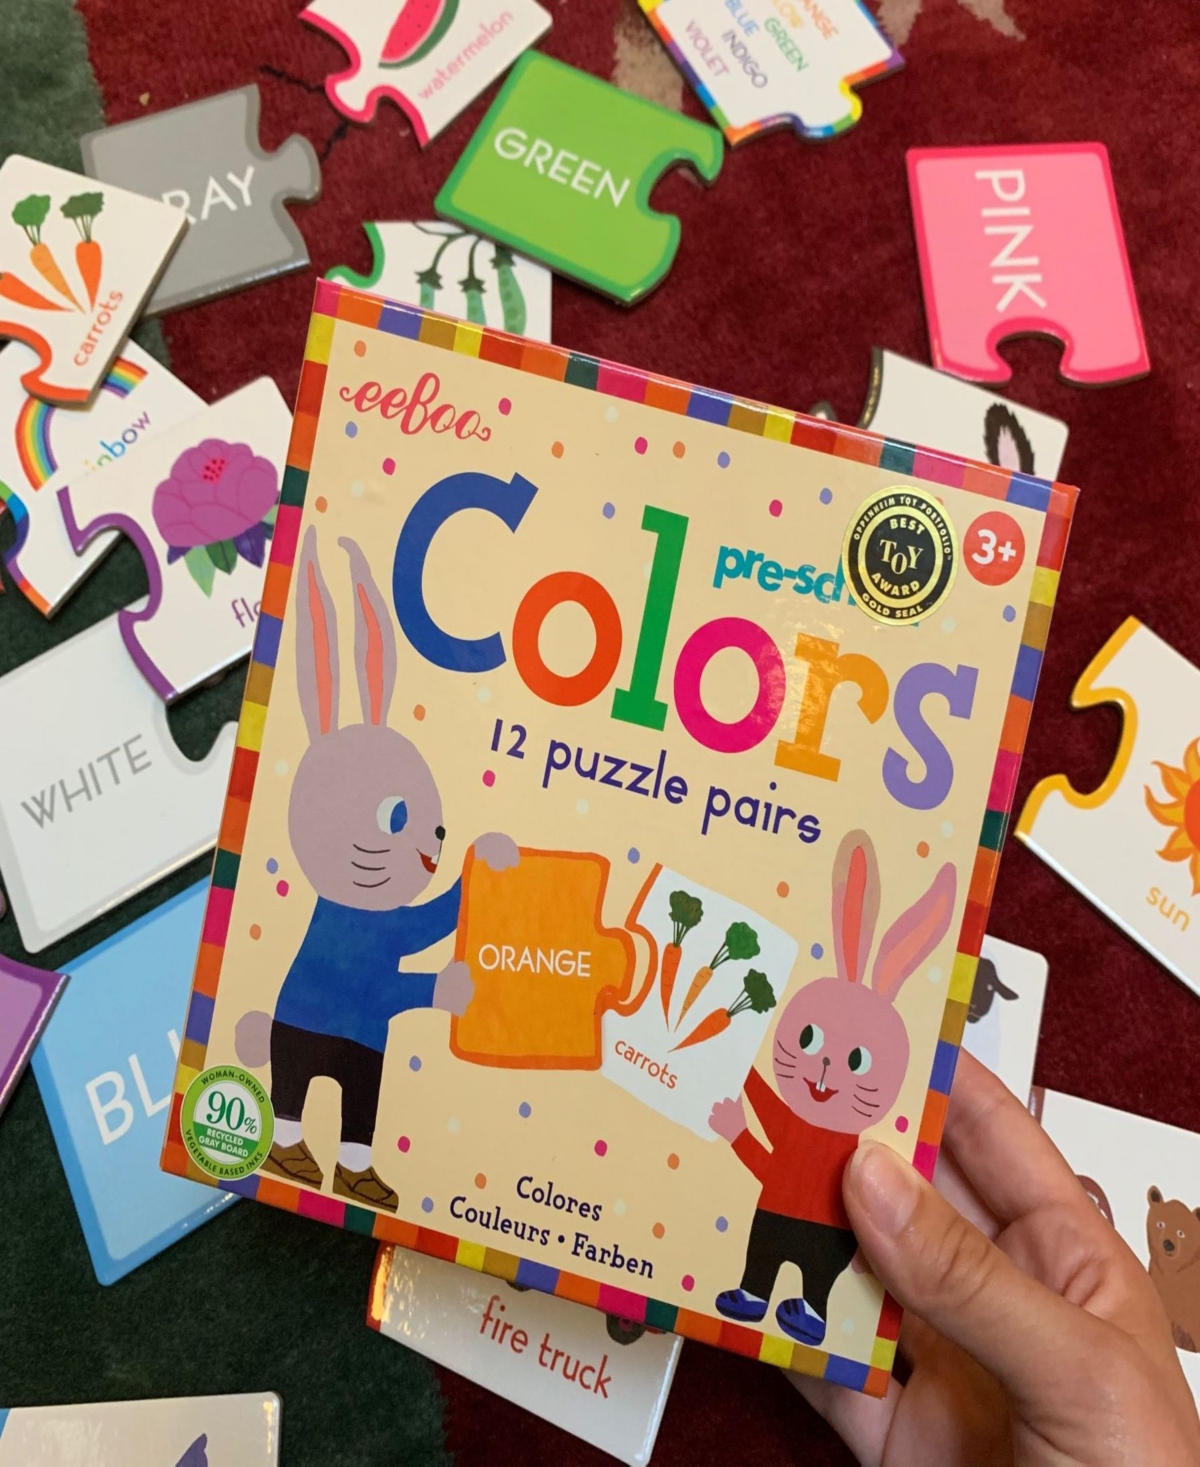 Shop Eeboo Preschool Colors 12 Puzzle Pairs In Multi